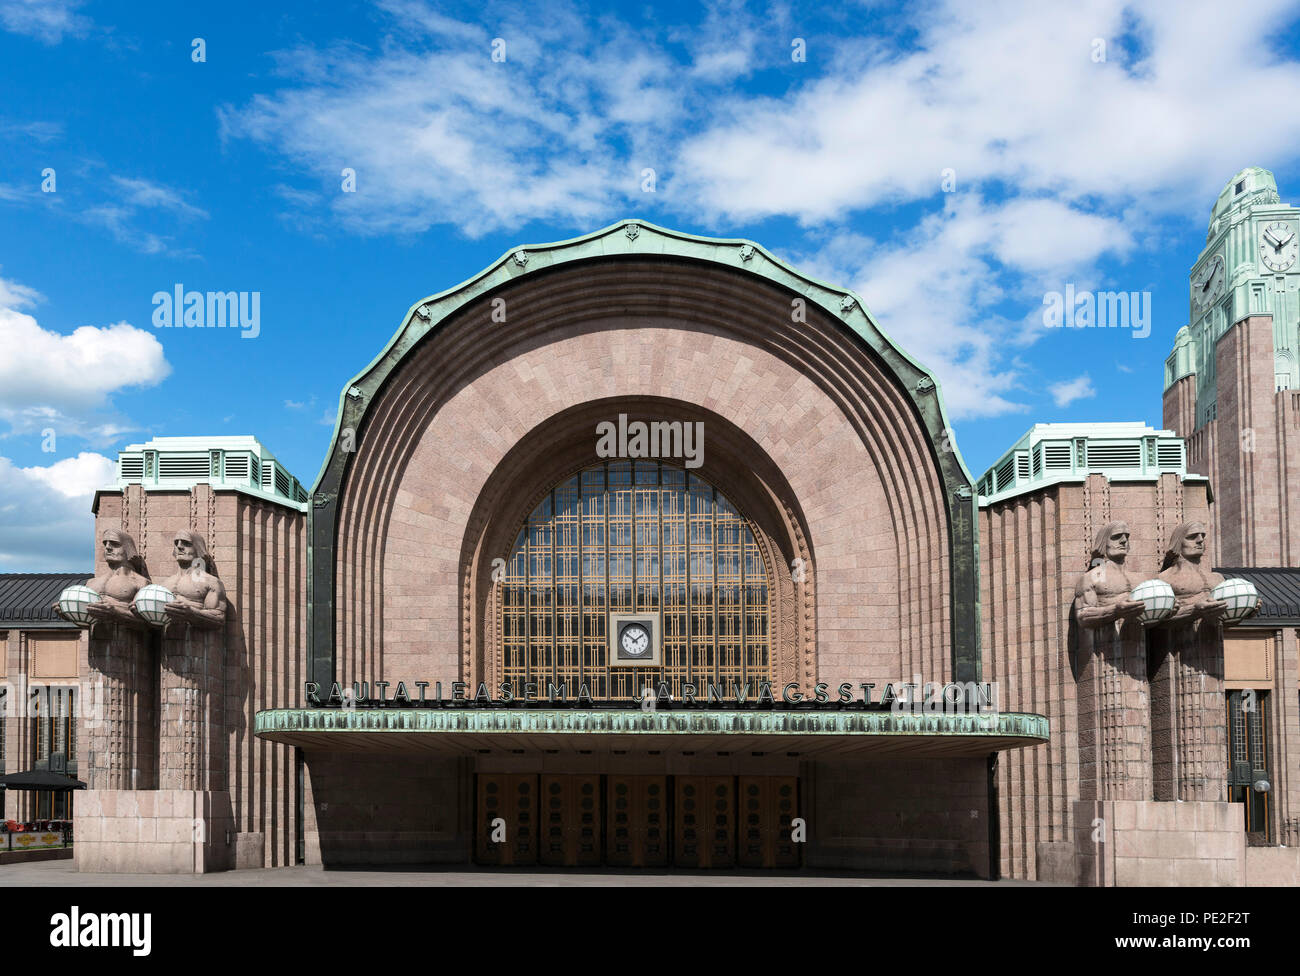 La arquitectura Art Nouveau de la Estación Central de Helsinki, Helsinki, Finlandia Foto de stock